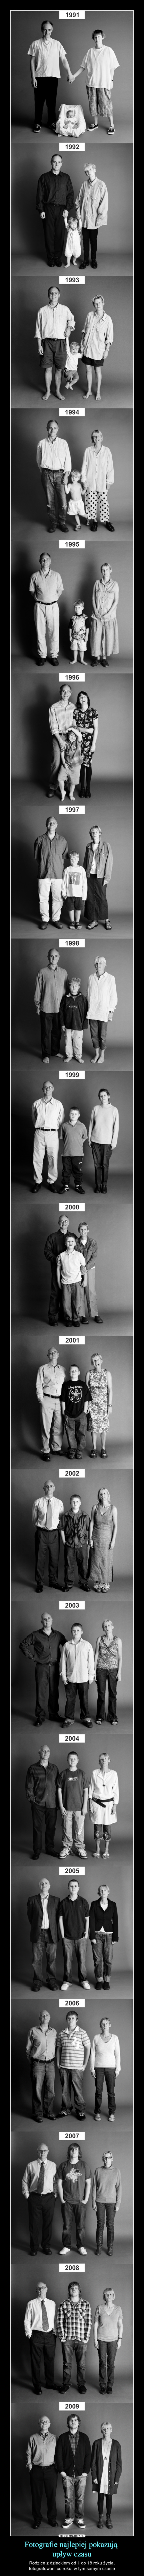 Fotografie najlepiej pokazują upływ czasu – Rodzice z dzieckiem od 1 do 18 roku życia,fotografowani co roku, w tym samym czasie 